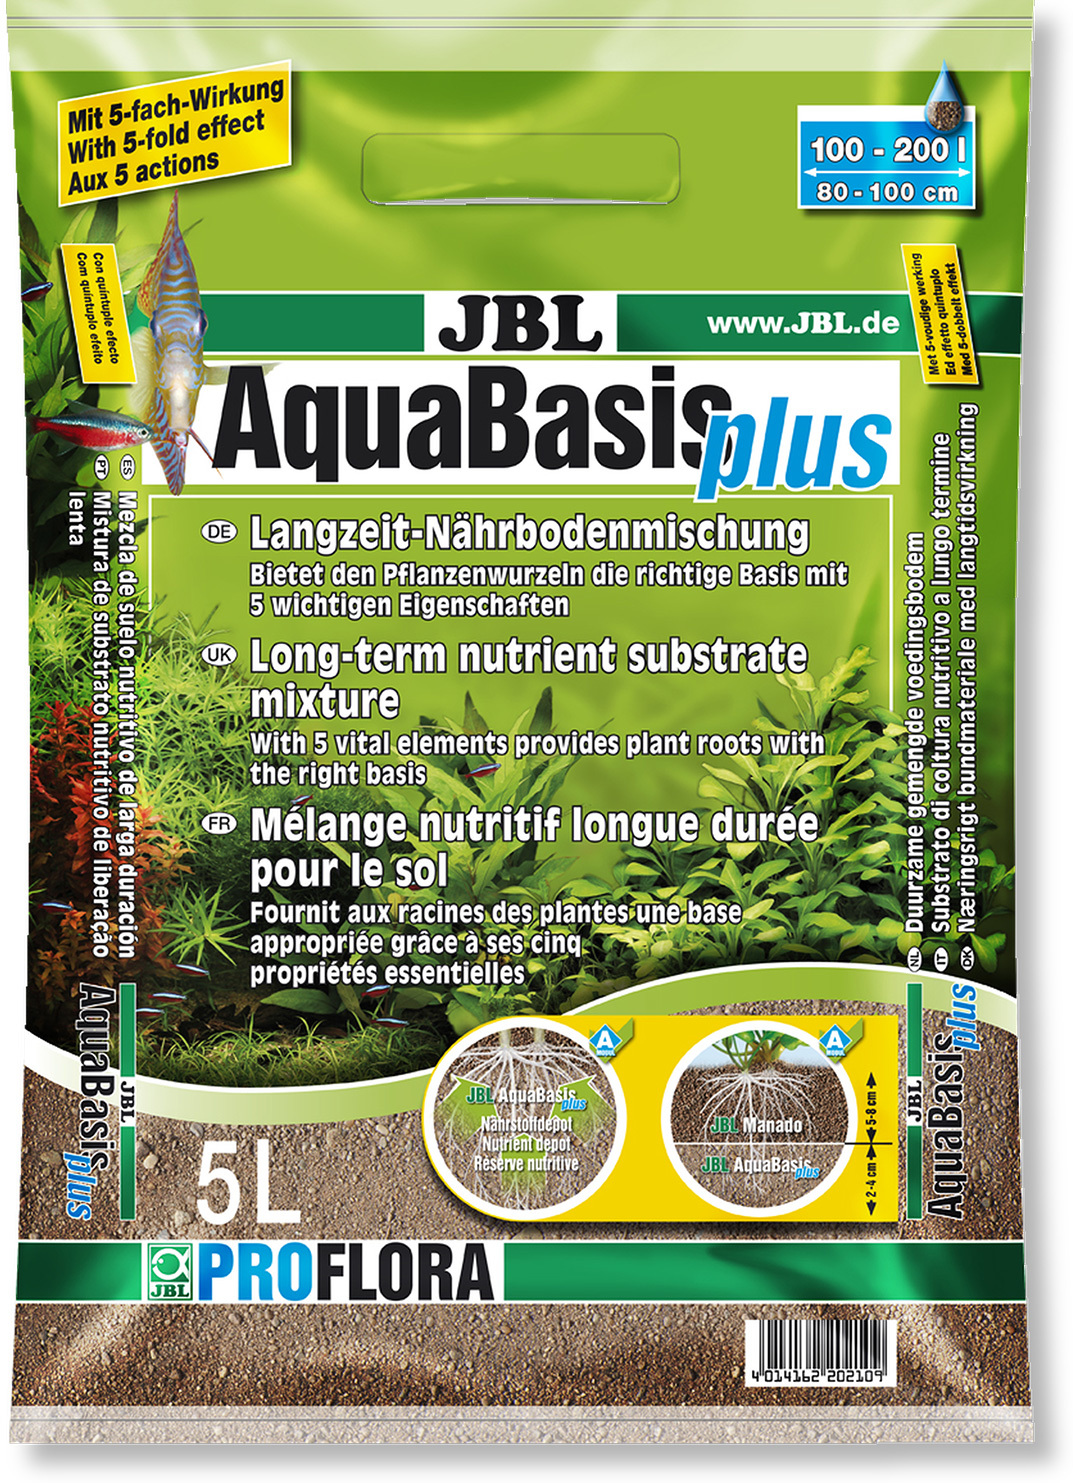 JBL AquaBasis Plus amestec de medii, granule minerale